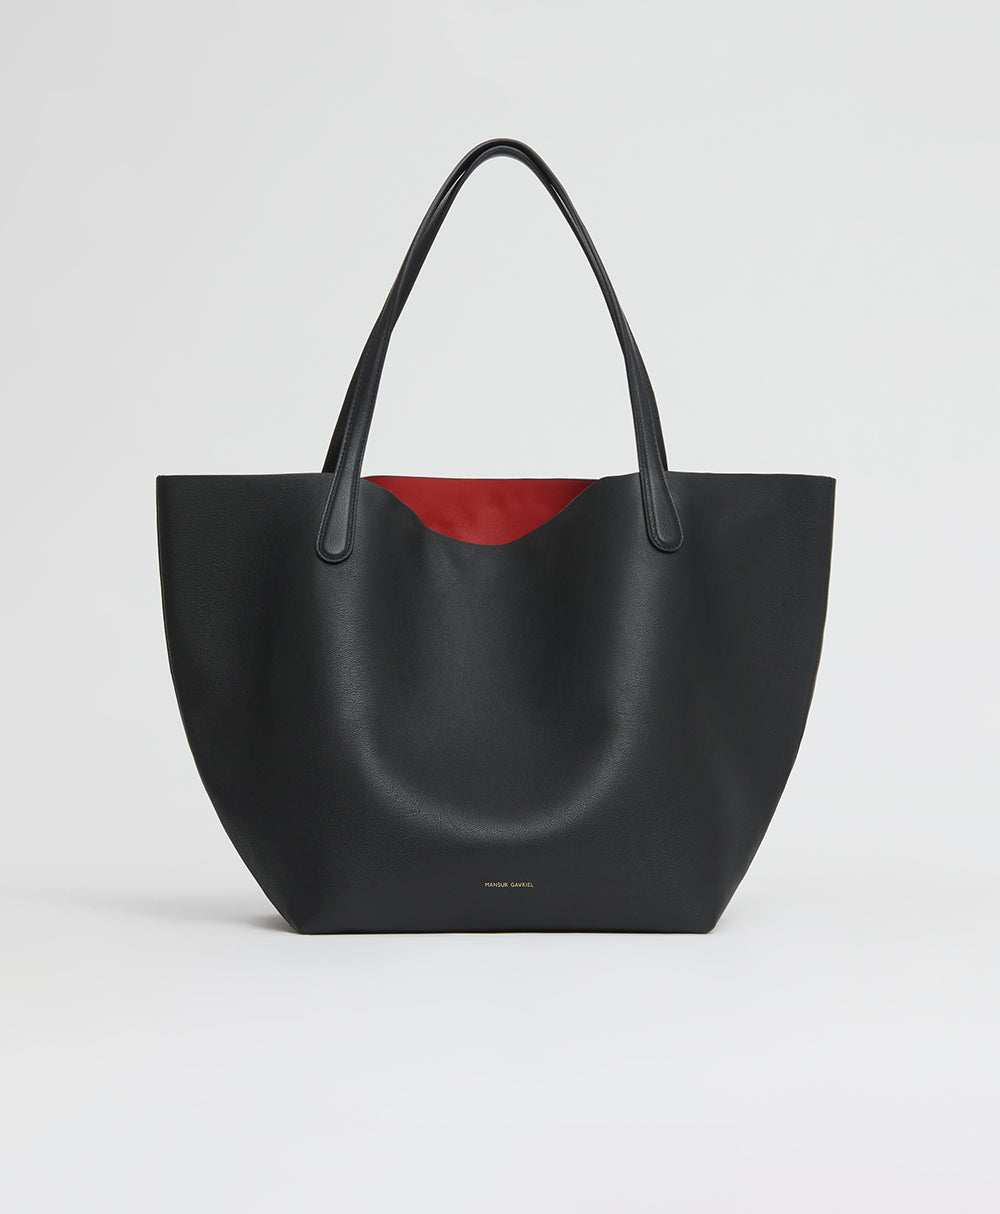 Buy Ladies Love It - Burgundy Leather Tote Bag Online in India – Tiger  Marrón